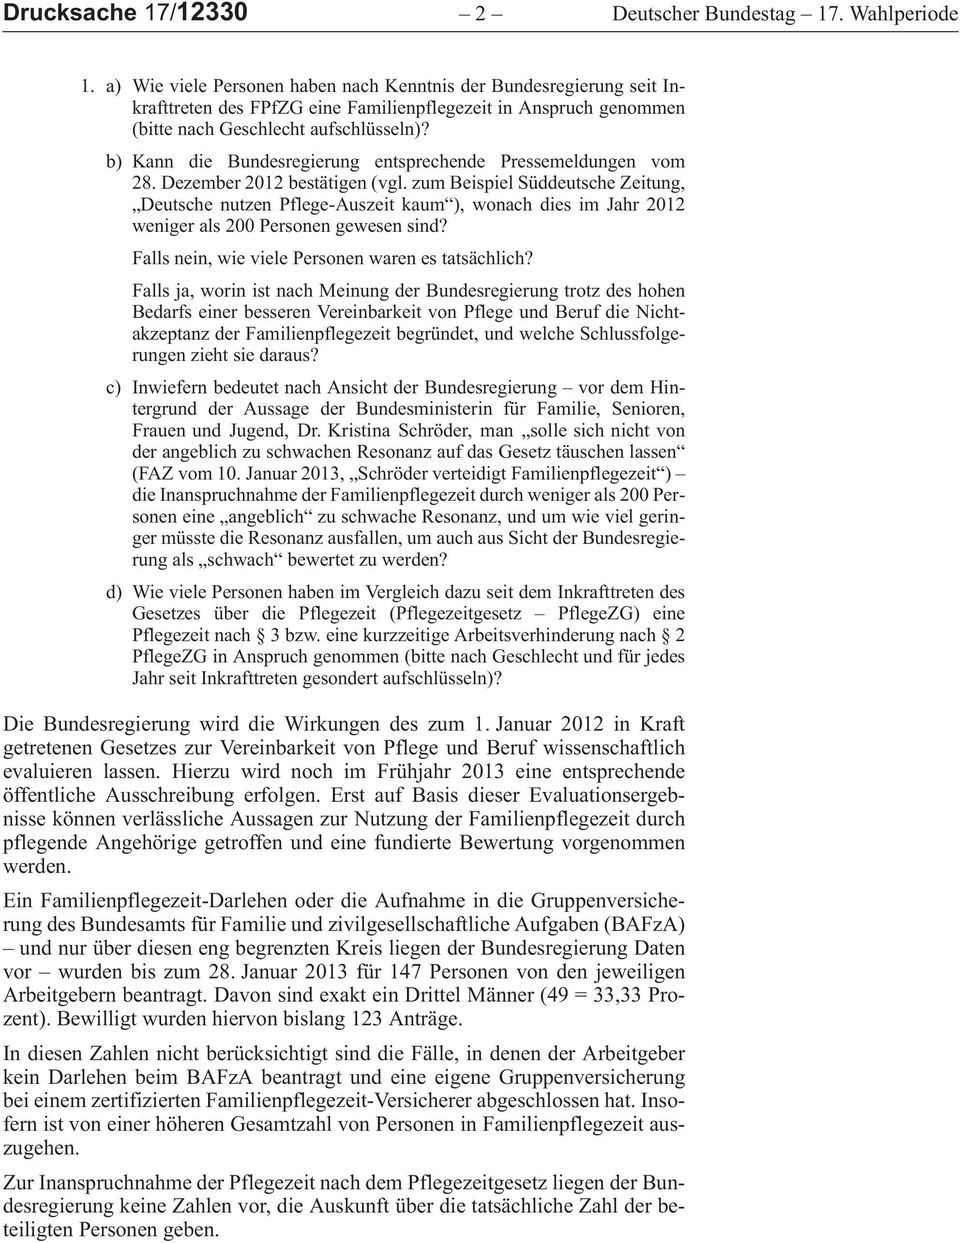 b)kanndiebundesregierungentsprechendepressemeldungenvom 28.Dezember2012bestätigen (vgl.